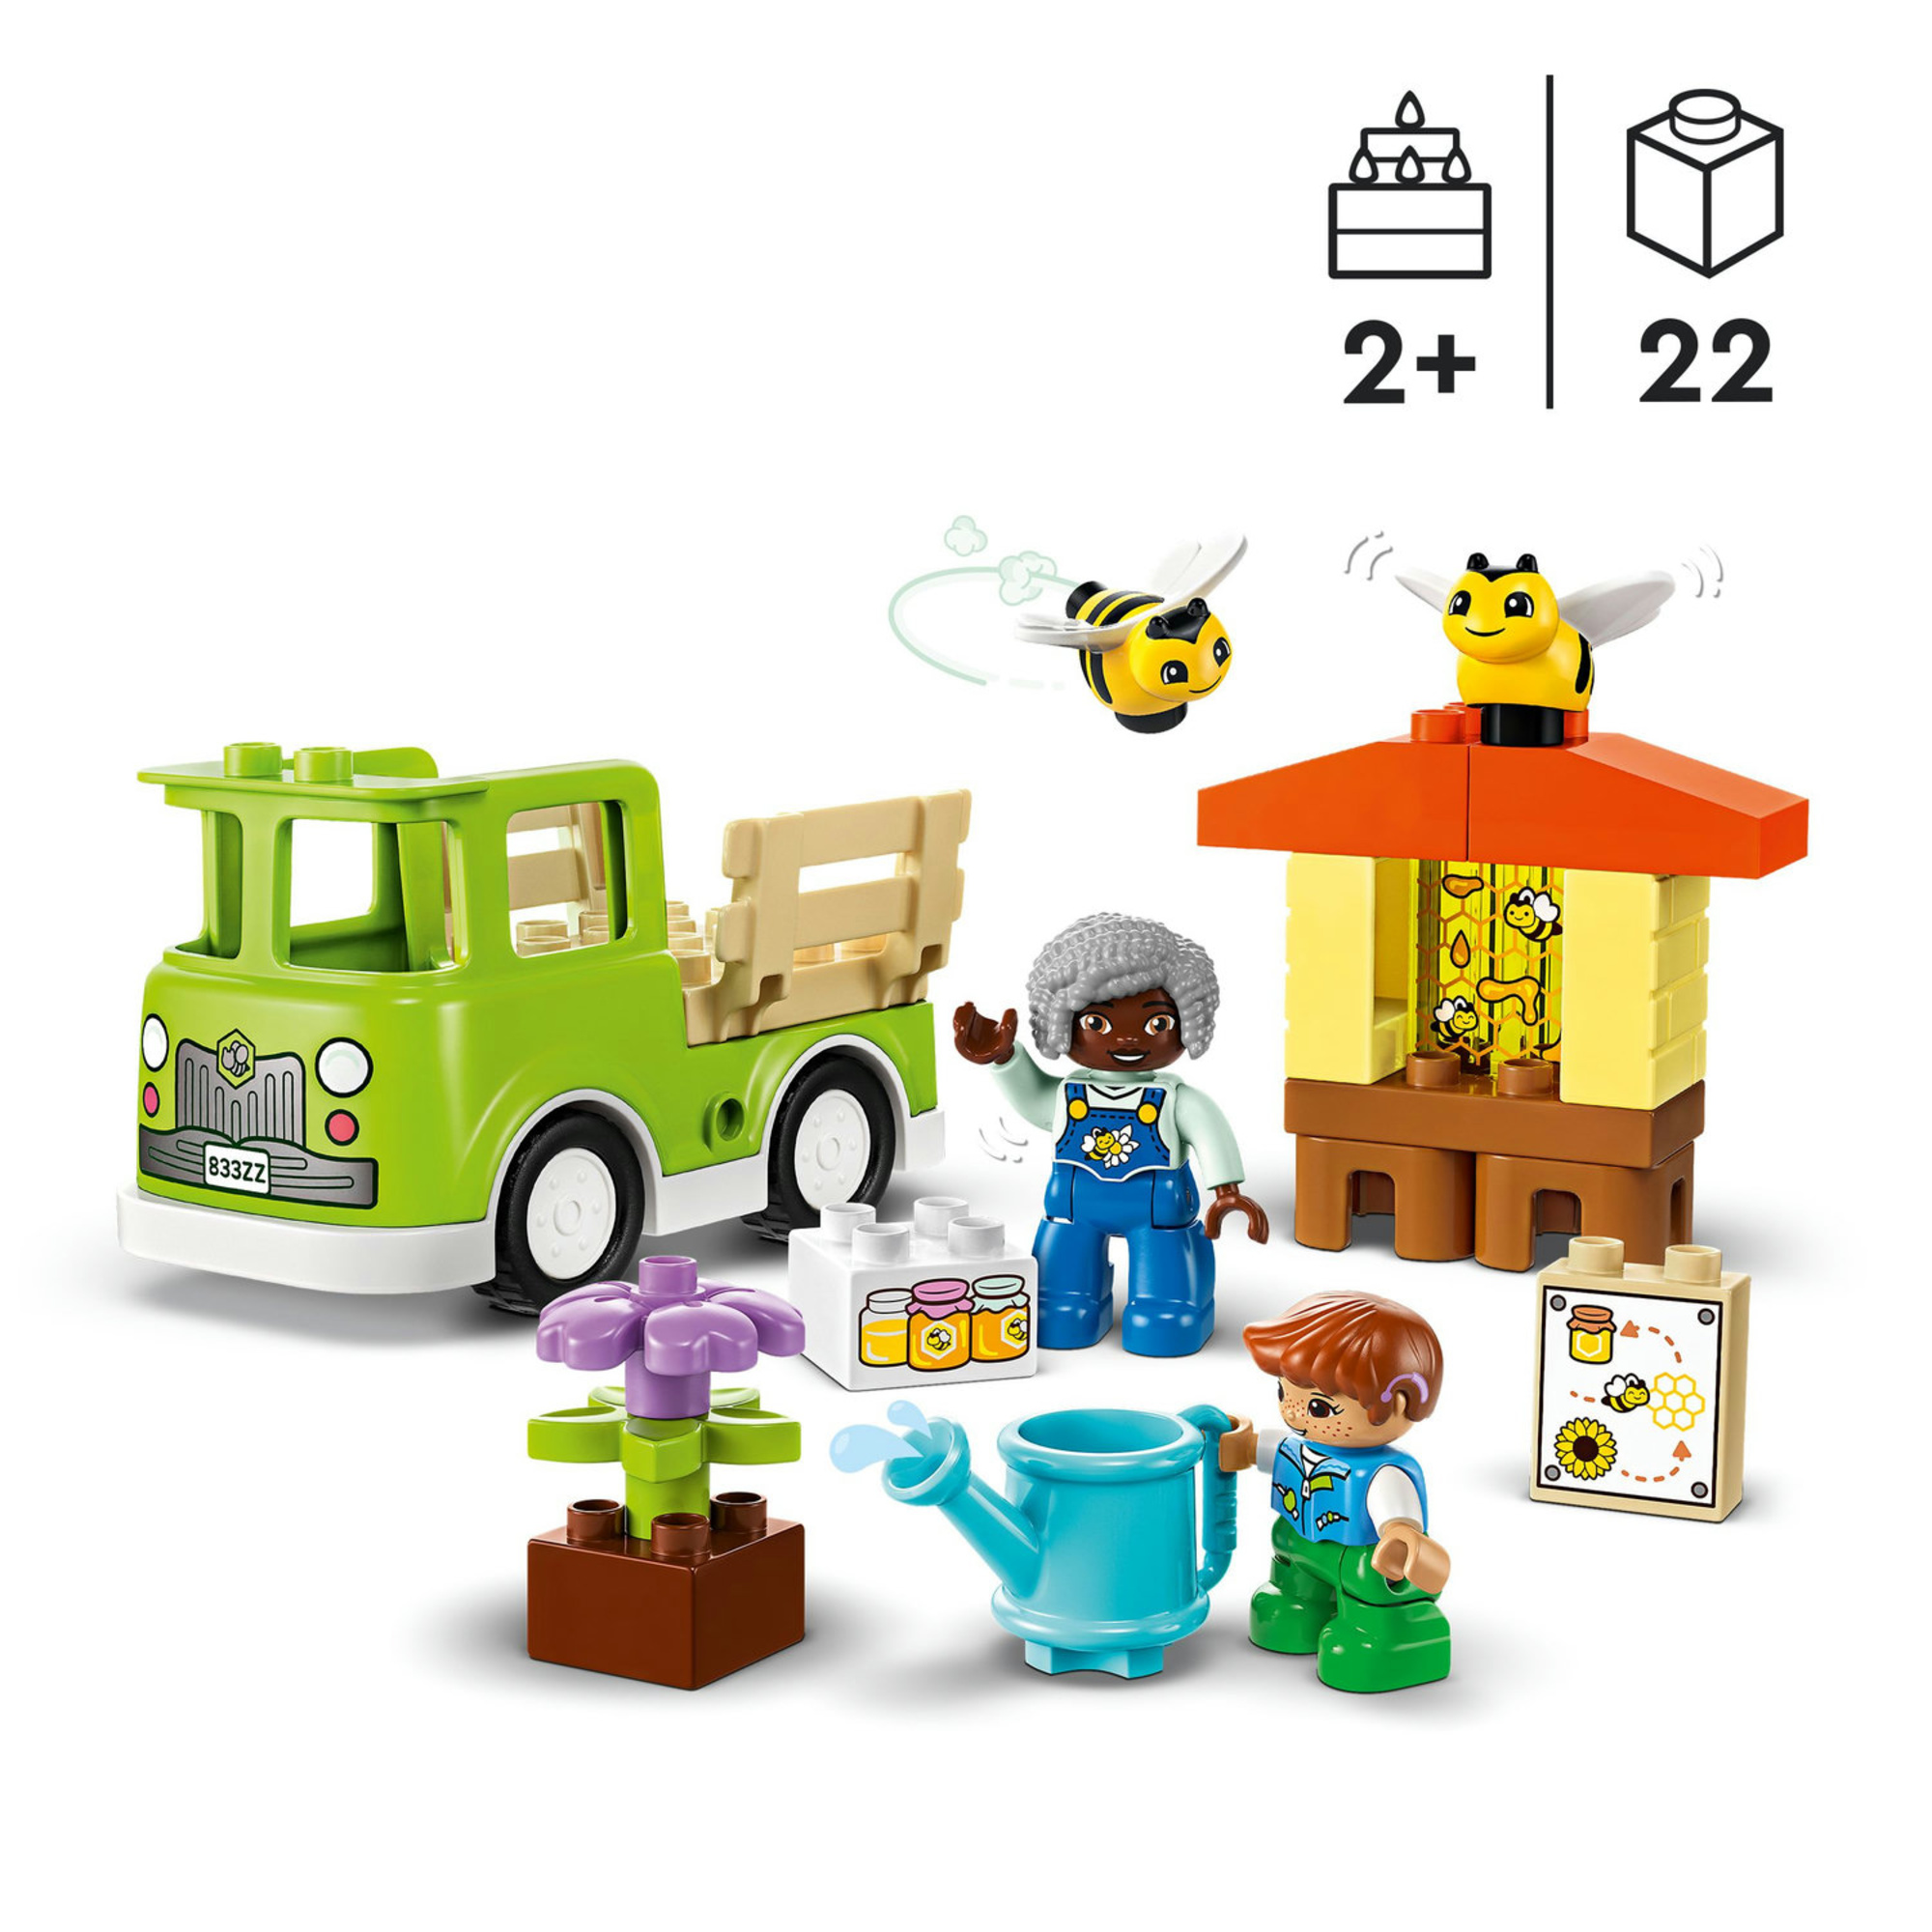 Camion giocattolo cura di api e alveari - 10419 - lego duplo - Duplo